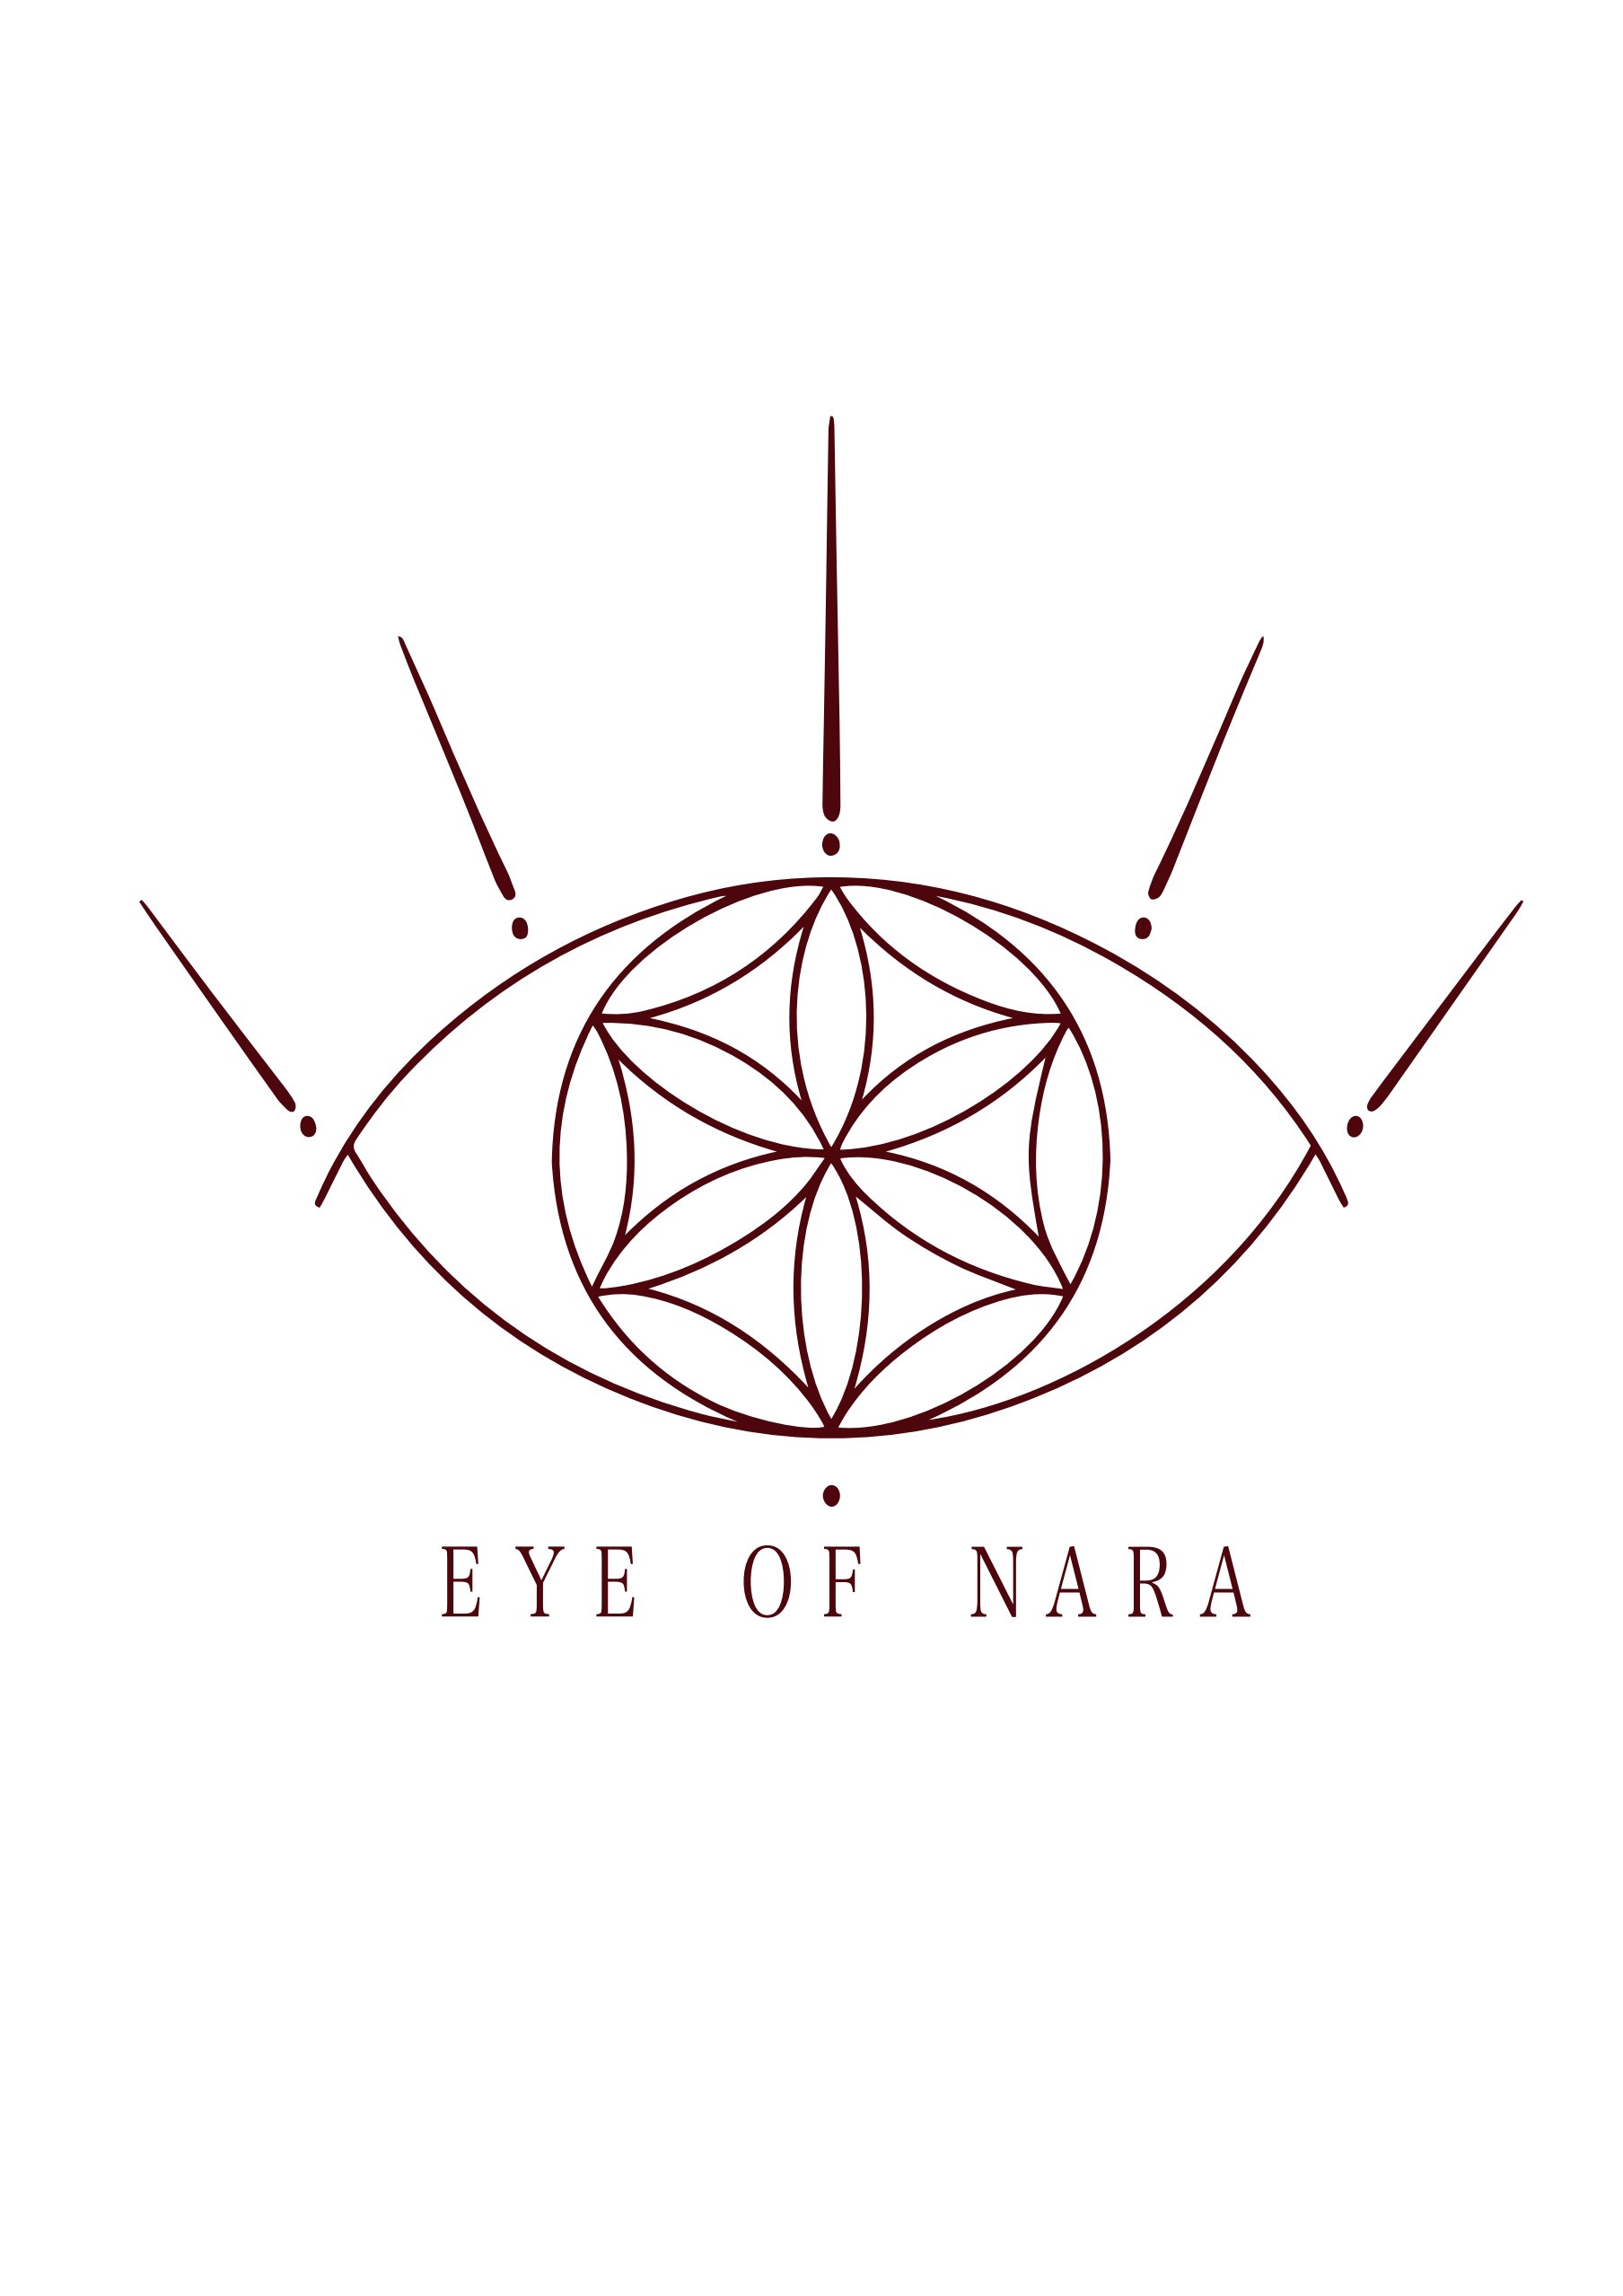 Eye of NARA